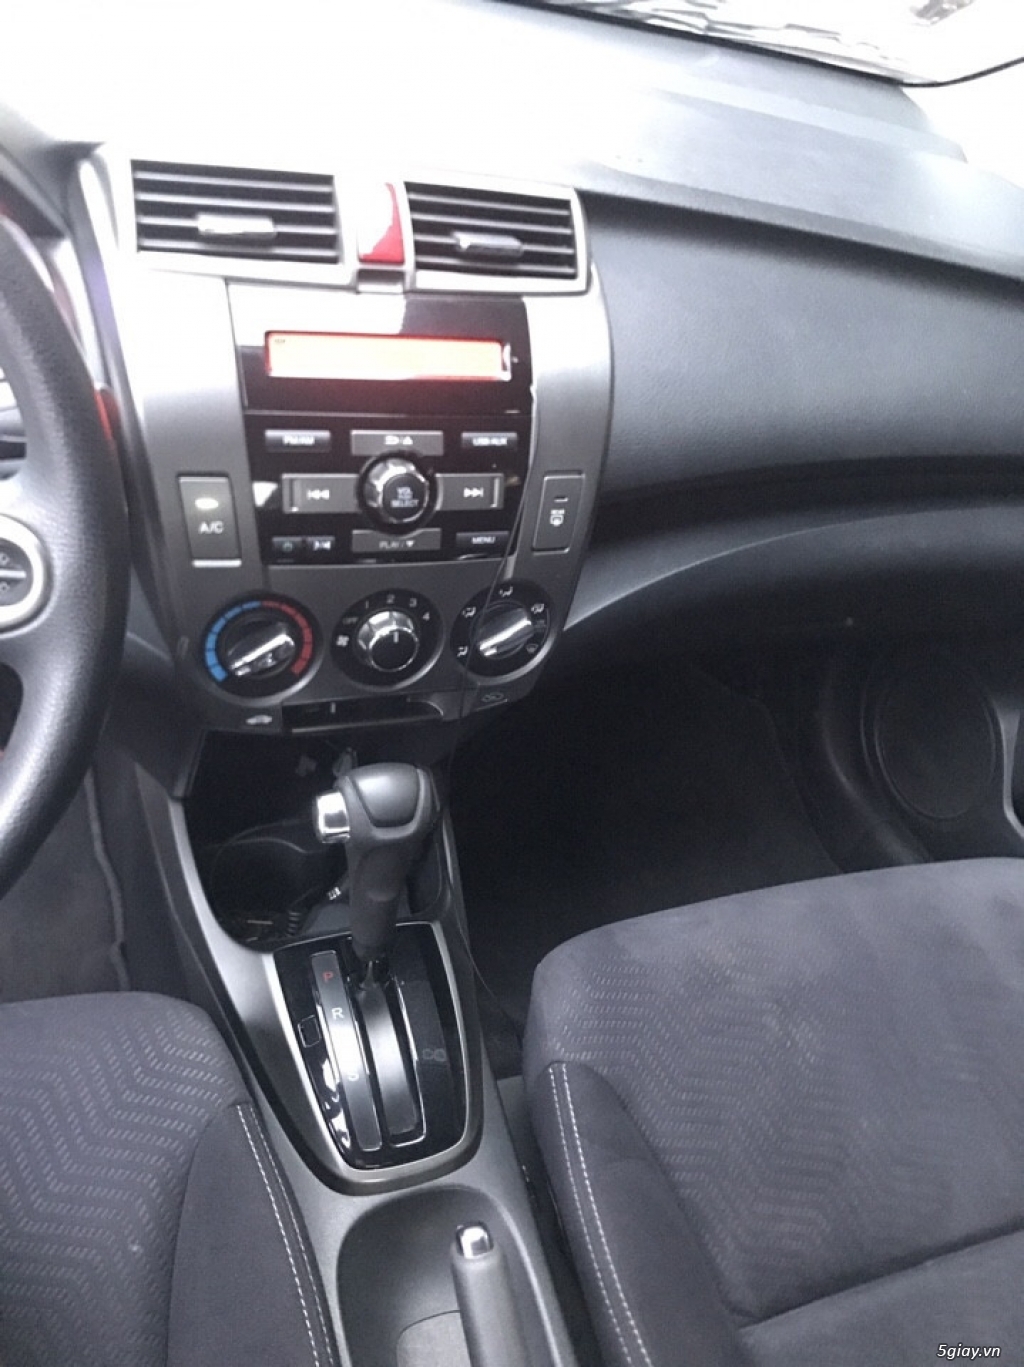 Honda City 2014 màu đen, số tự động,Tp.HCM - 7